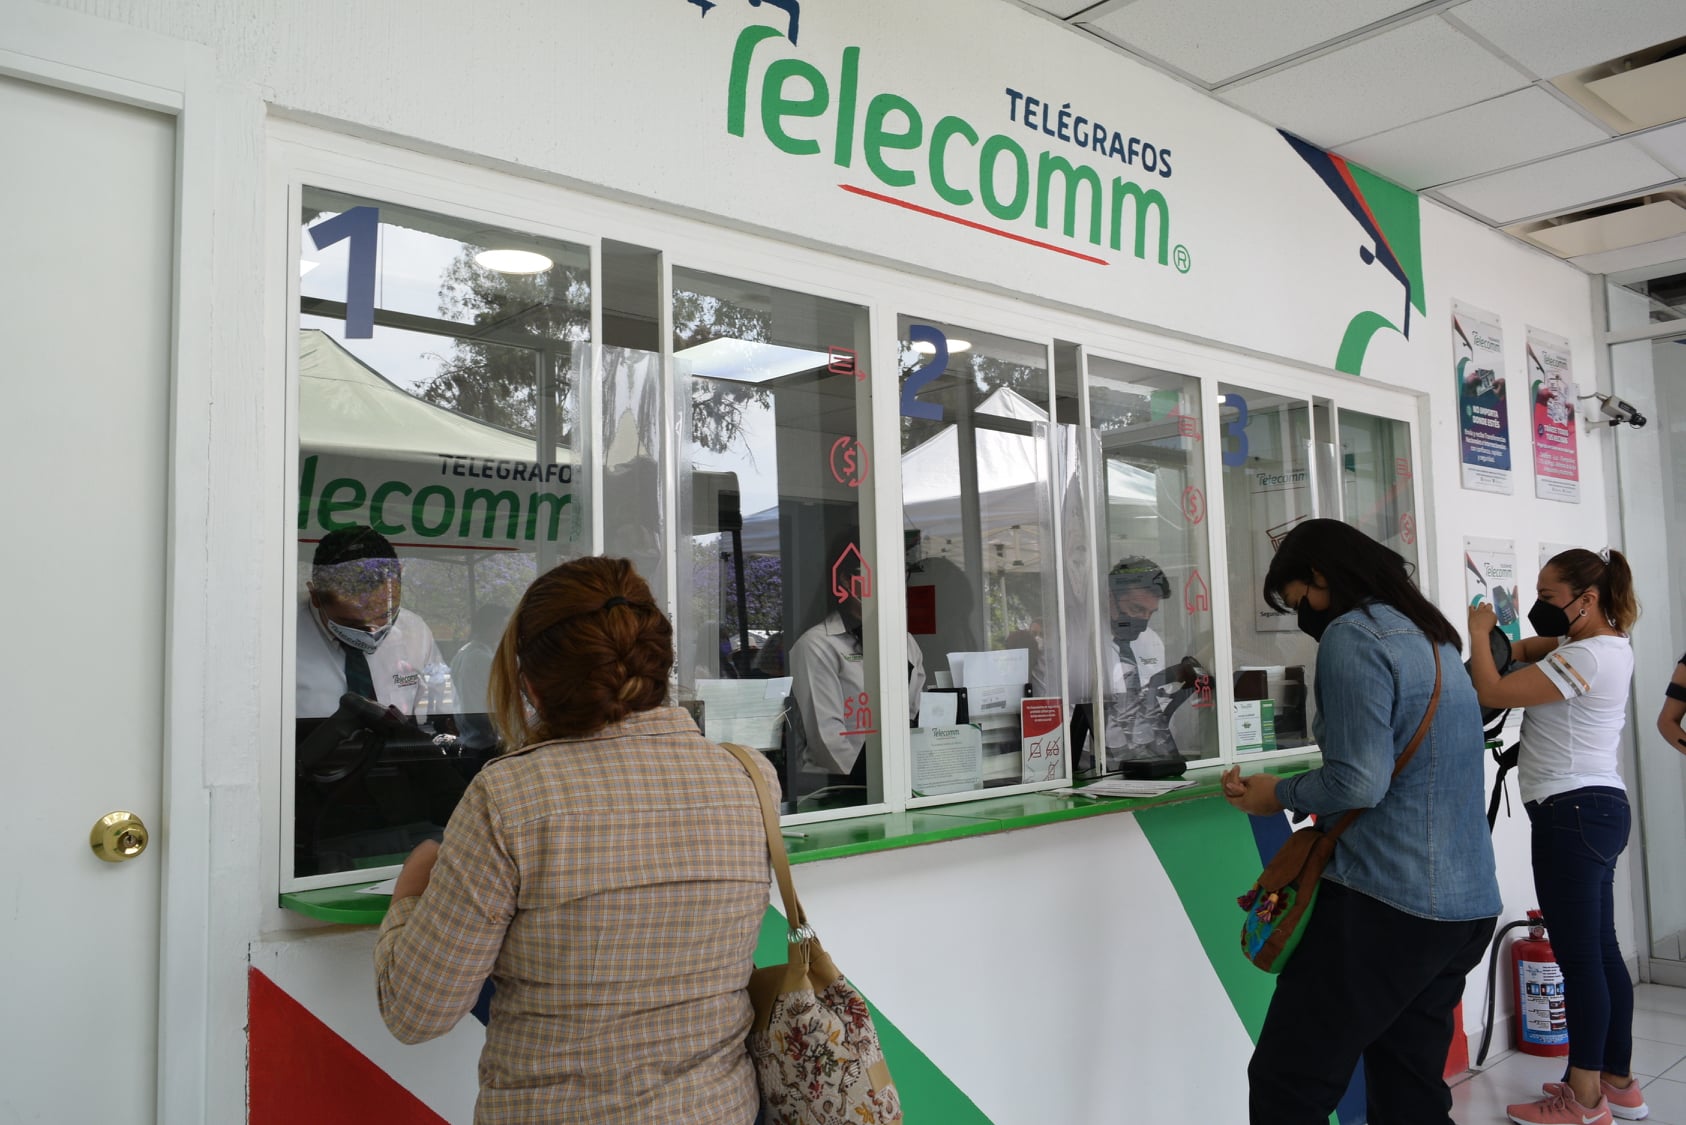 Telecomm se convertirá en Financiera para el Bienestar